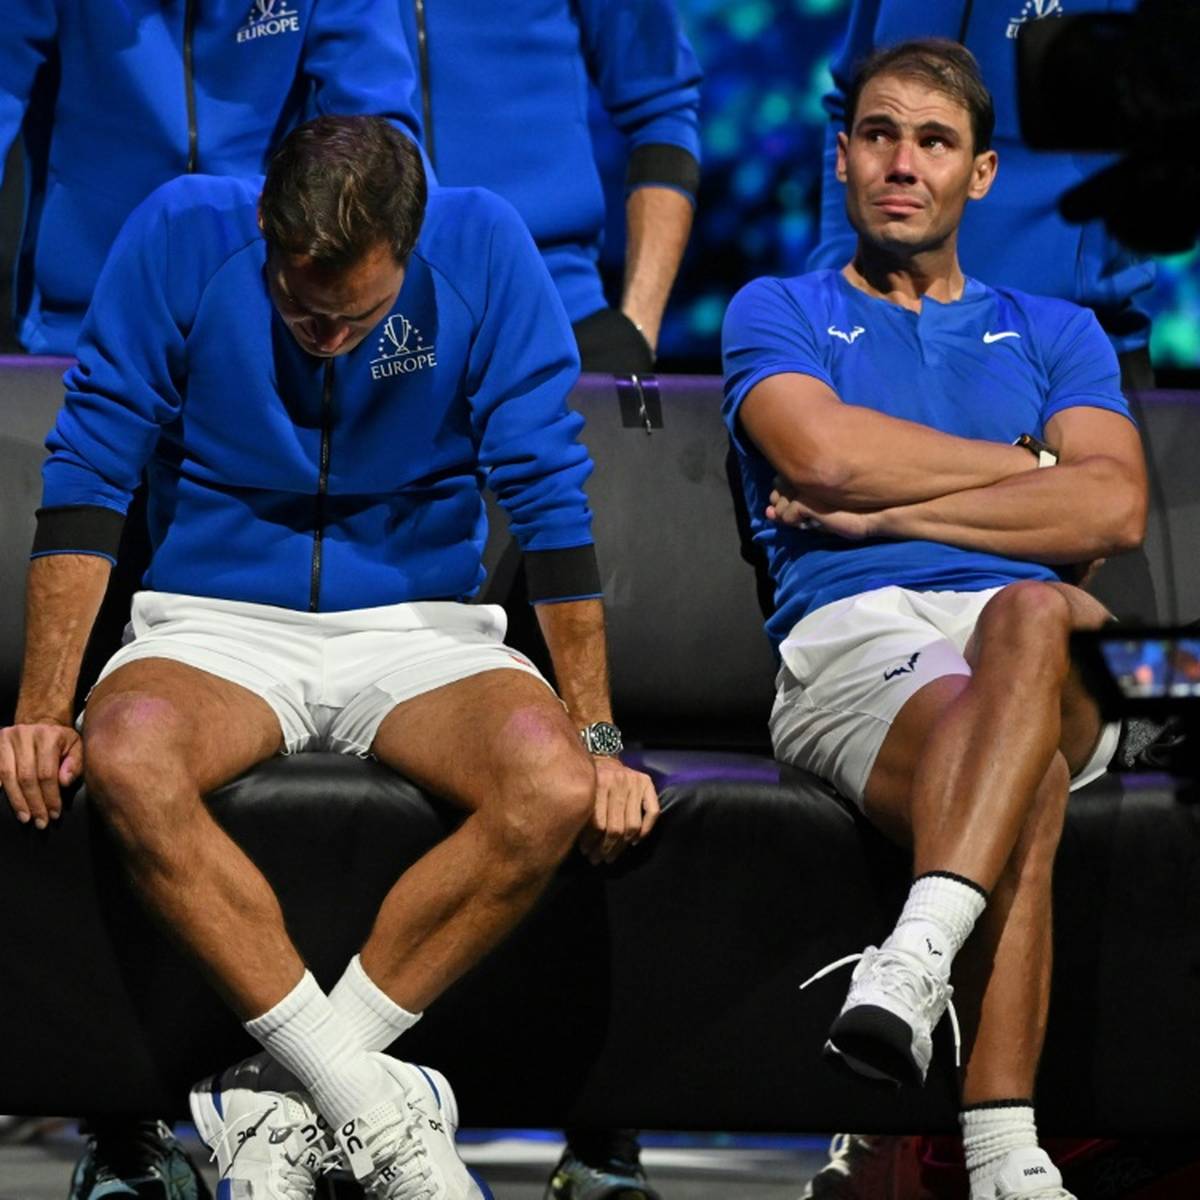 Rafael Nadal wird nach dem emotionalen Abschied seines langjährigen Rivalen Roger Federer keine weiteren Matches mehr beim Laver Cup bestreiten.